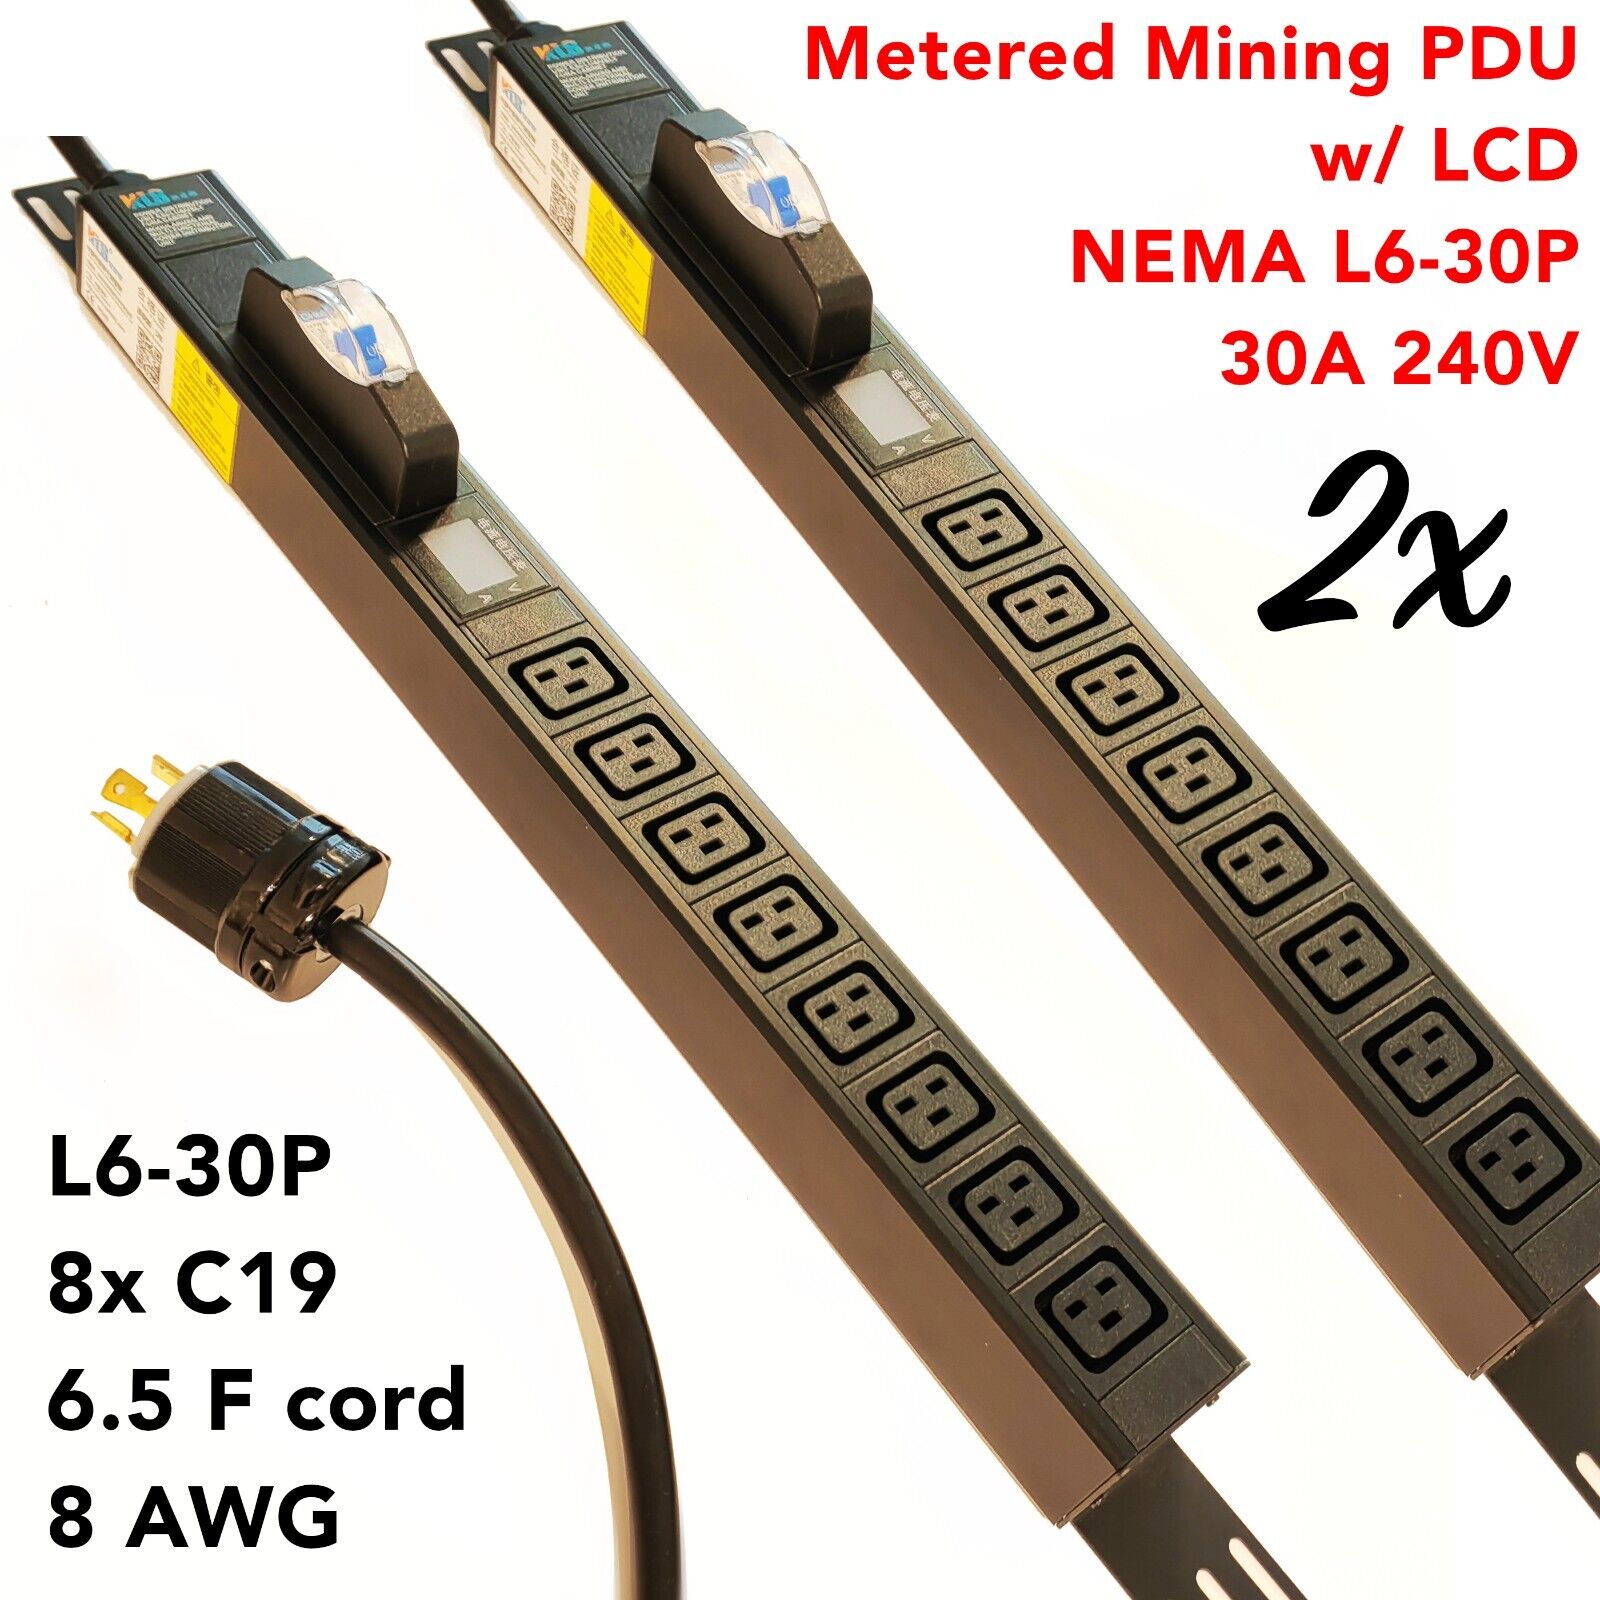 2x LCD Metered/Breaker PDU Mining 240V 30A L6-30P 8x C19 Cord 2M 6.5F long 8 AWG